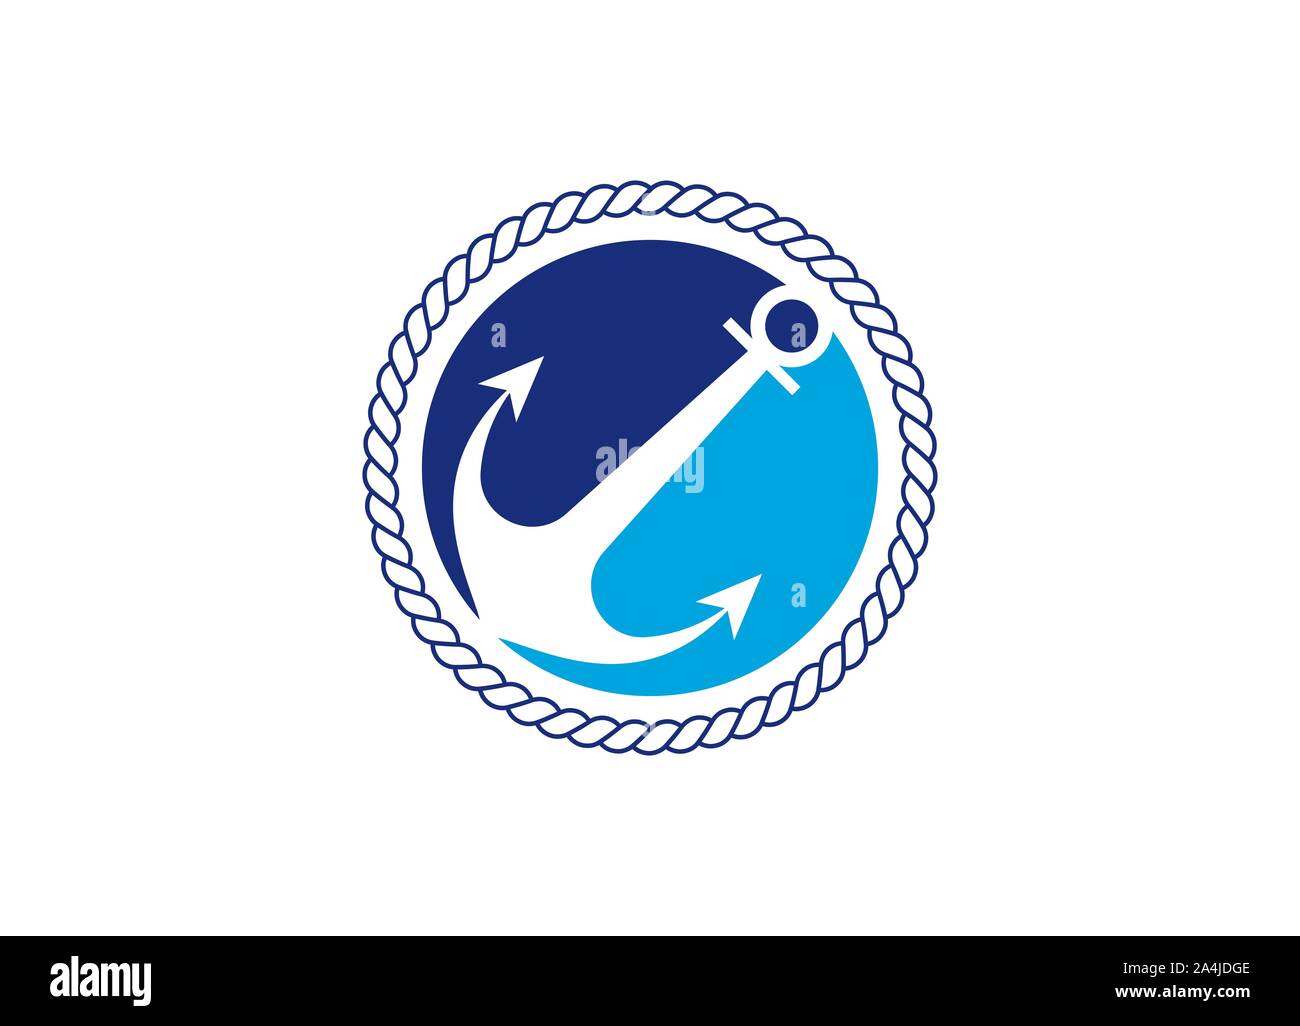 Anchor logo design template vector icon for shipping company Stock Vector